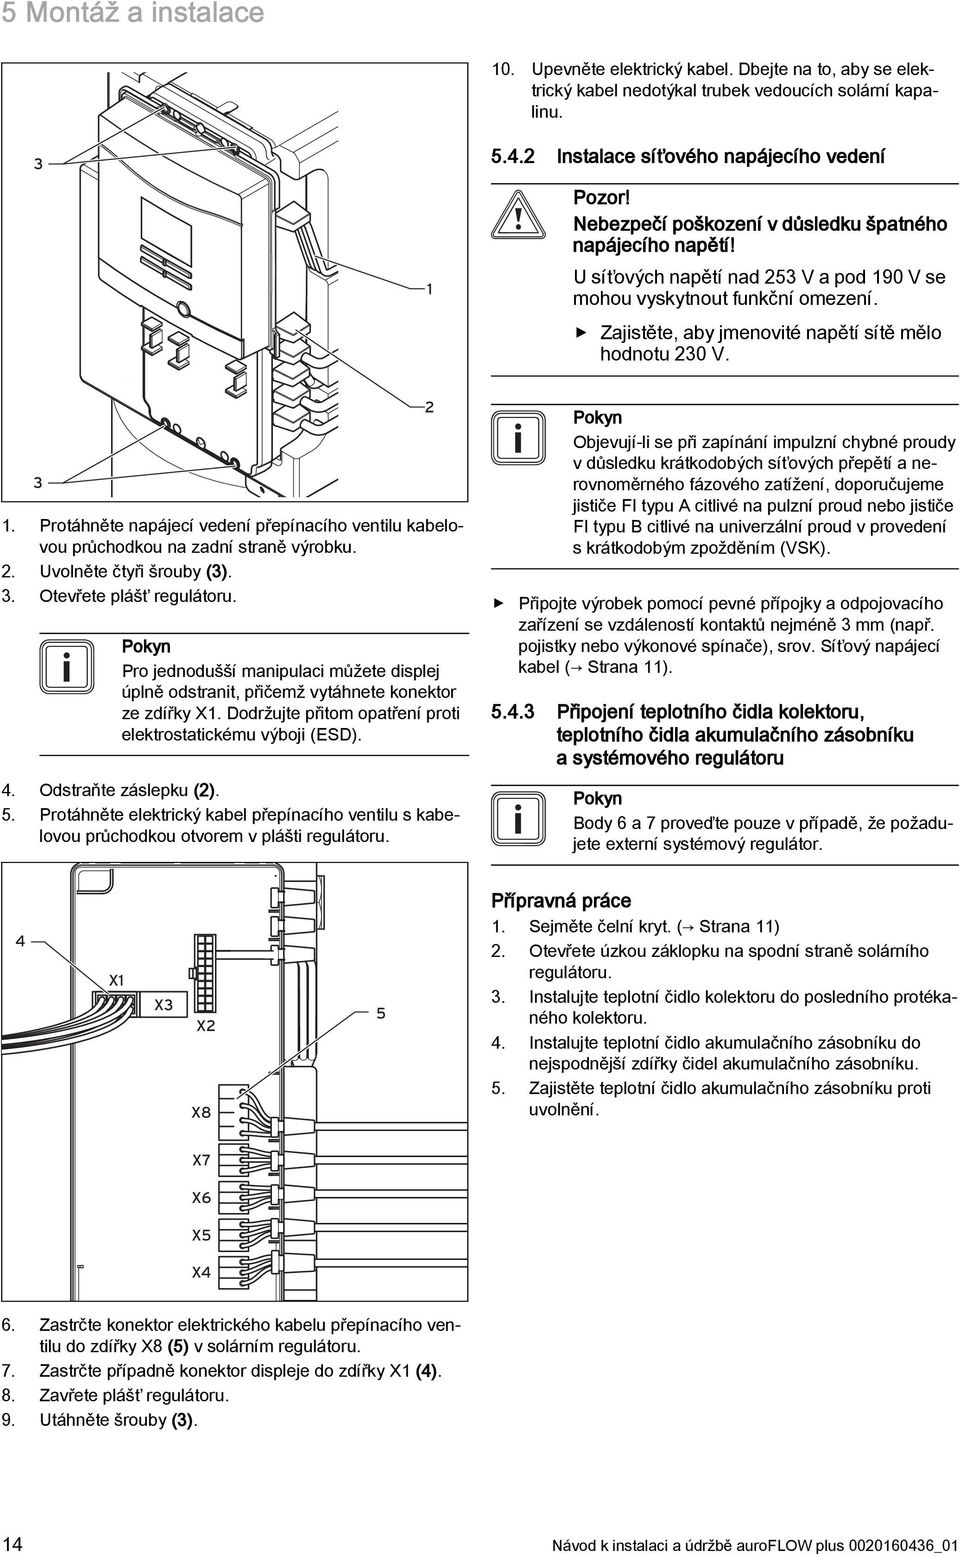 Protáhněte napájecí vedení přepínacího ventilu kabelovou průchodkou na zadní straně výrobku. 2. Uvolněte čtyři šrouby (3). 3. Otevřete plášť regulátoru.